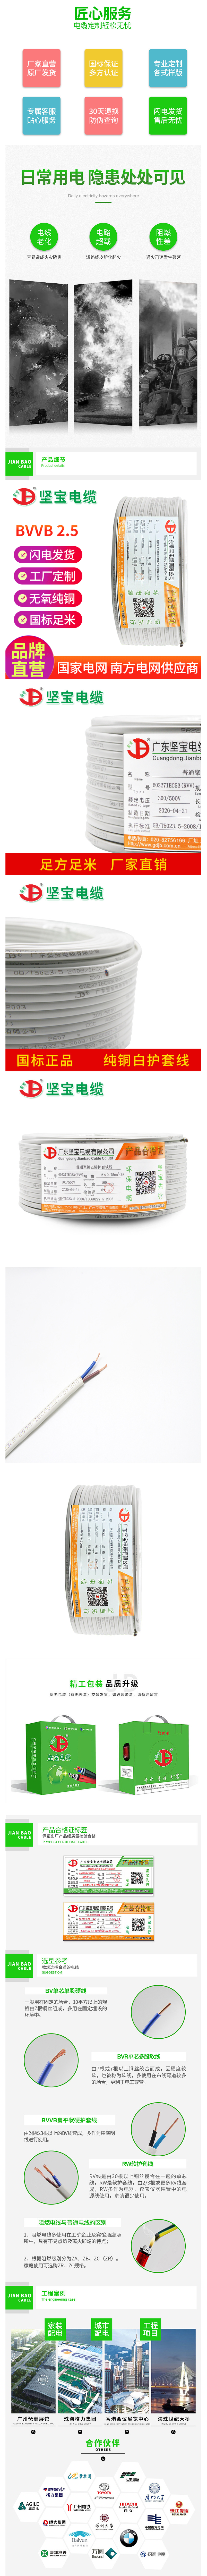 坚宝电缆 国标 无氧铜 铜芯线 平行线 BVVB2_2.5平方 电线电缆-阿里巴巴.png